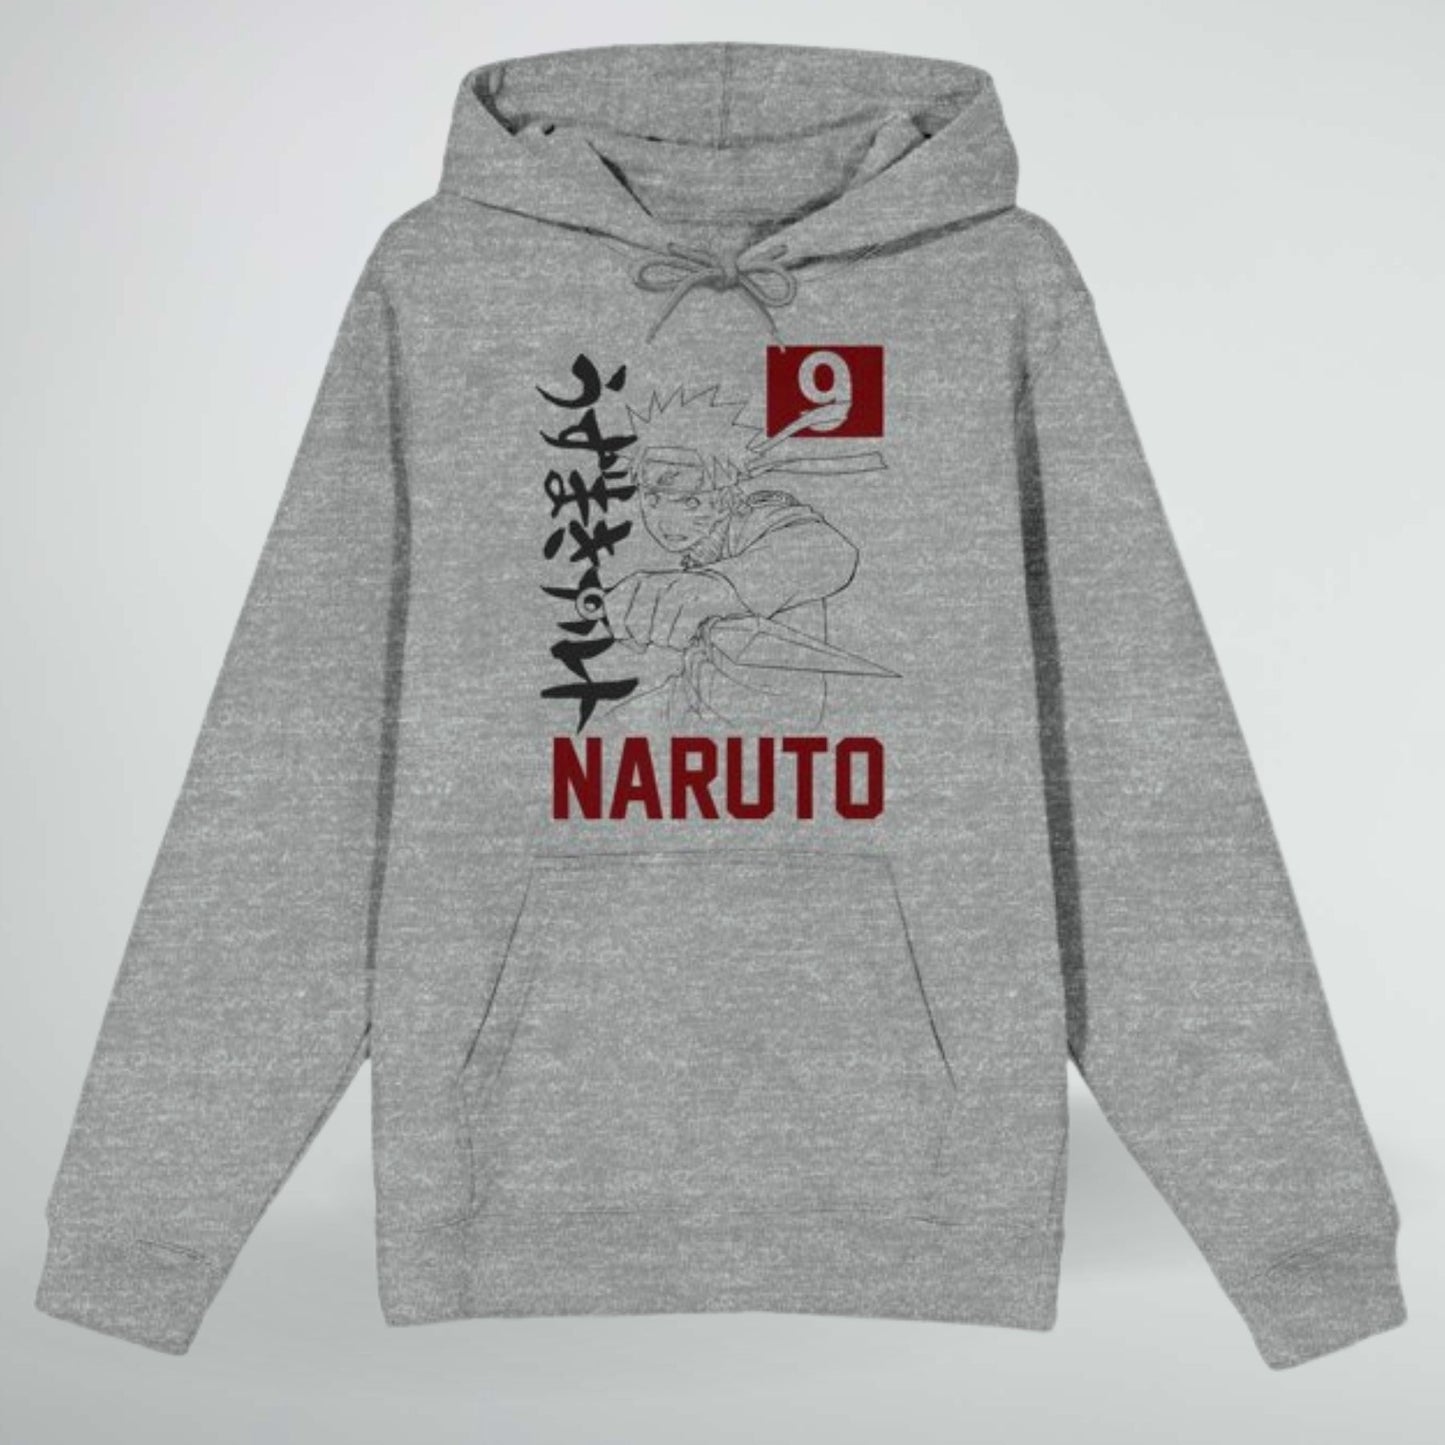 Naruto Uzumaki (Naruto Shippuden) Athletic Grey Hoodie Sweatshirt